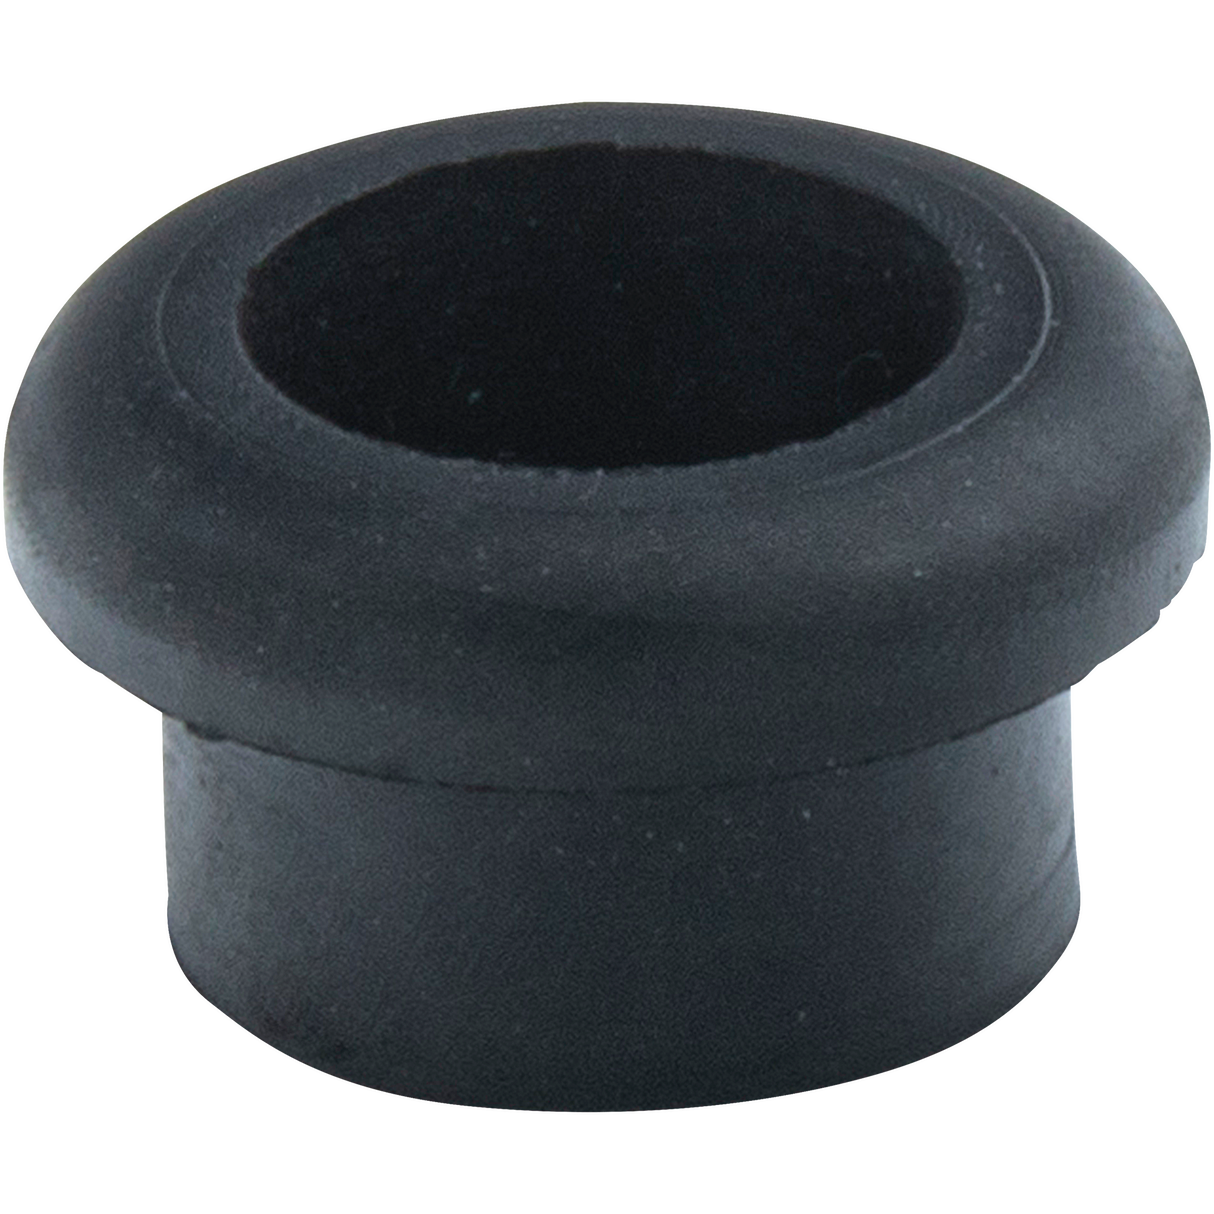 Rubber Grommet for Pull-Stem Bongs (3 pk)